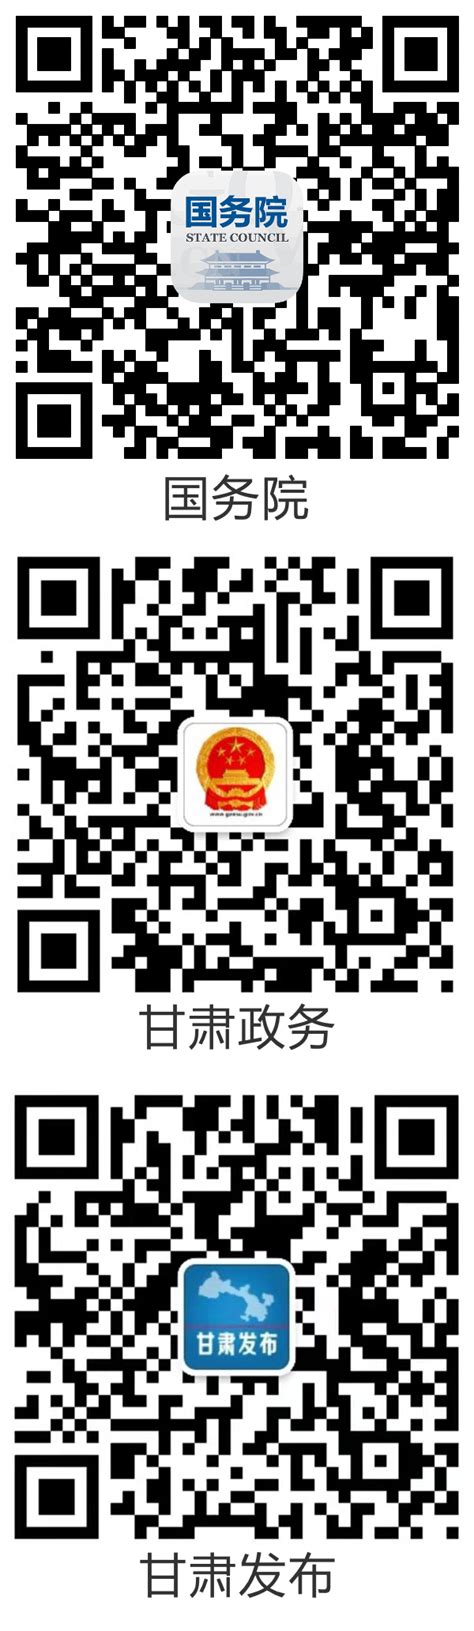 甘肃党建app下载安装最新版-甘肃党建平台登录官方版v1.23.1 安卓版-腾飞网